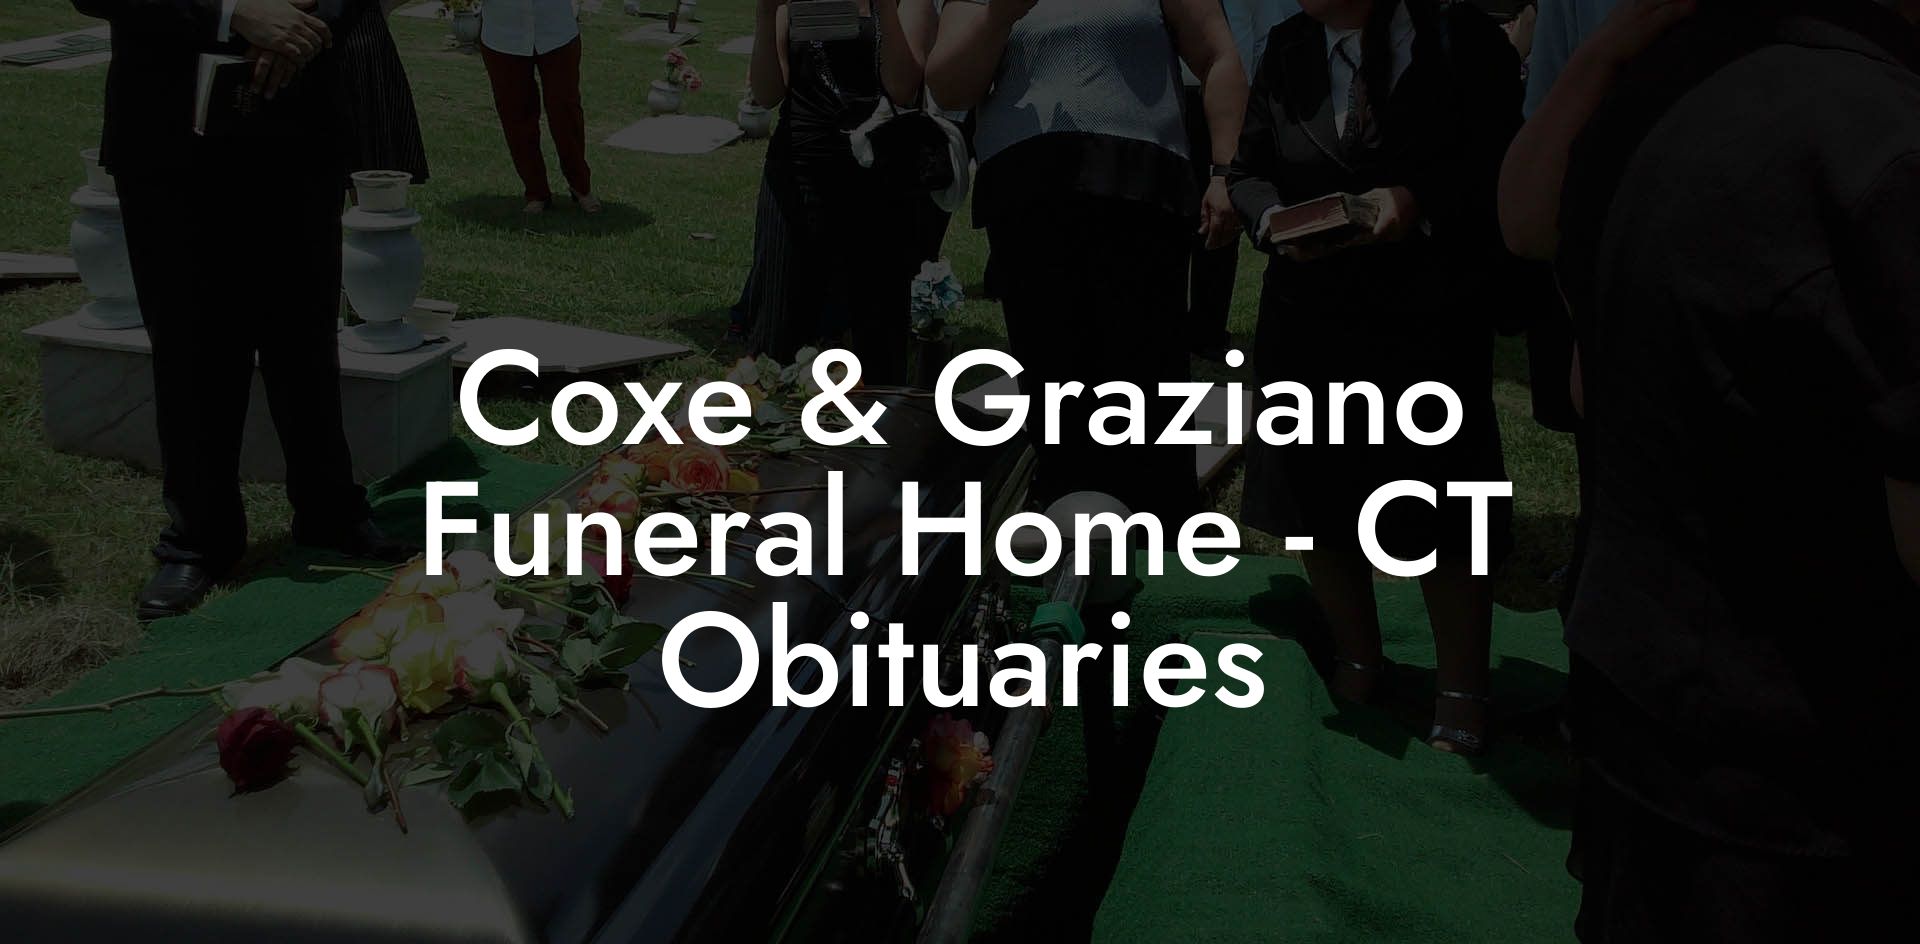 Coxe & Graziano Funeral Home - CT Obituaries